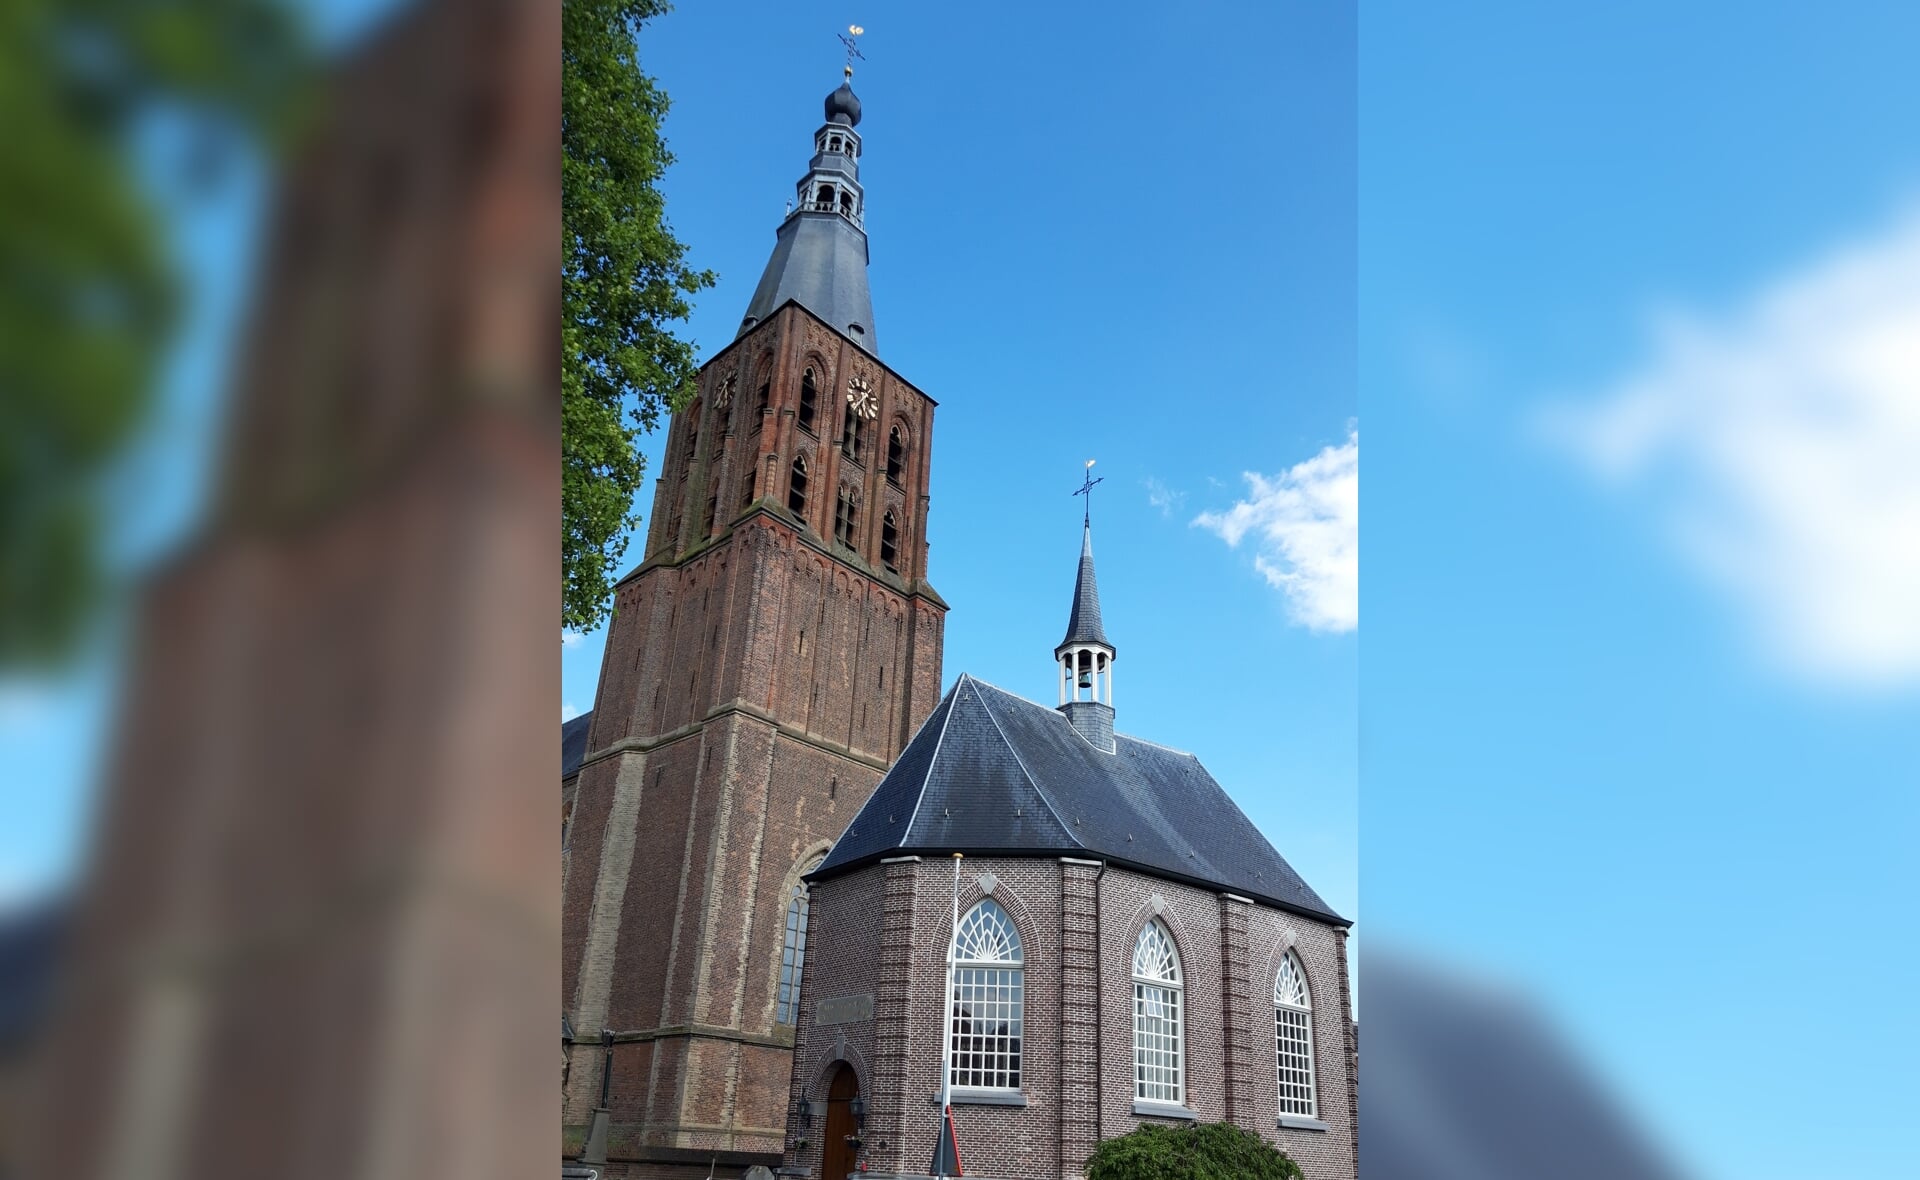 Het protestants kerkje aan de Clarissenstraat in Boxtel werd in 1812 gebouwd en is ontworpen door de Boxtelse architect, landmeter en politicus Hendrik Verhees. Op de achtergrond de toren van de Sint-Petrusbasiliek.